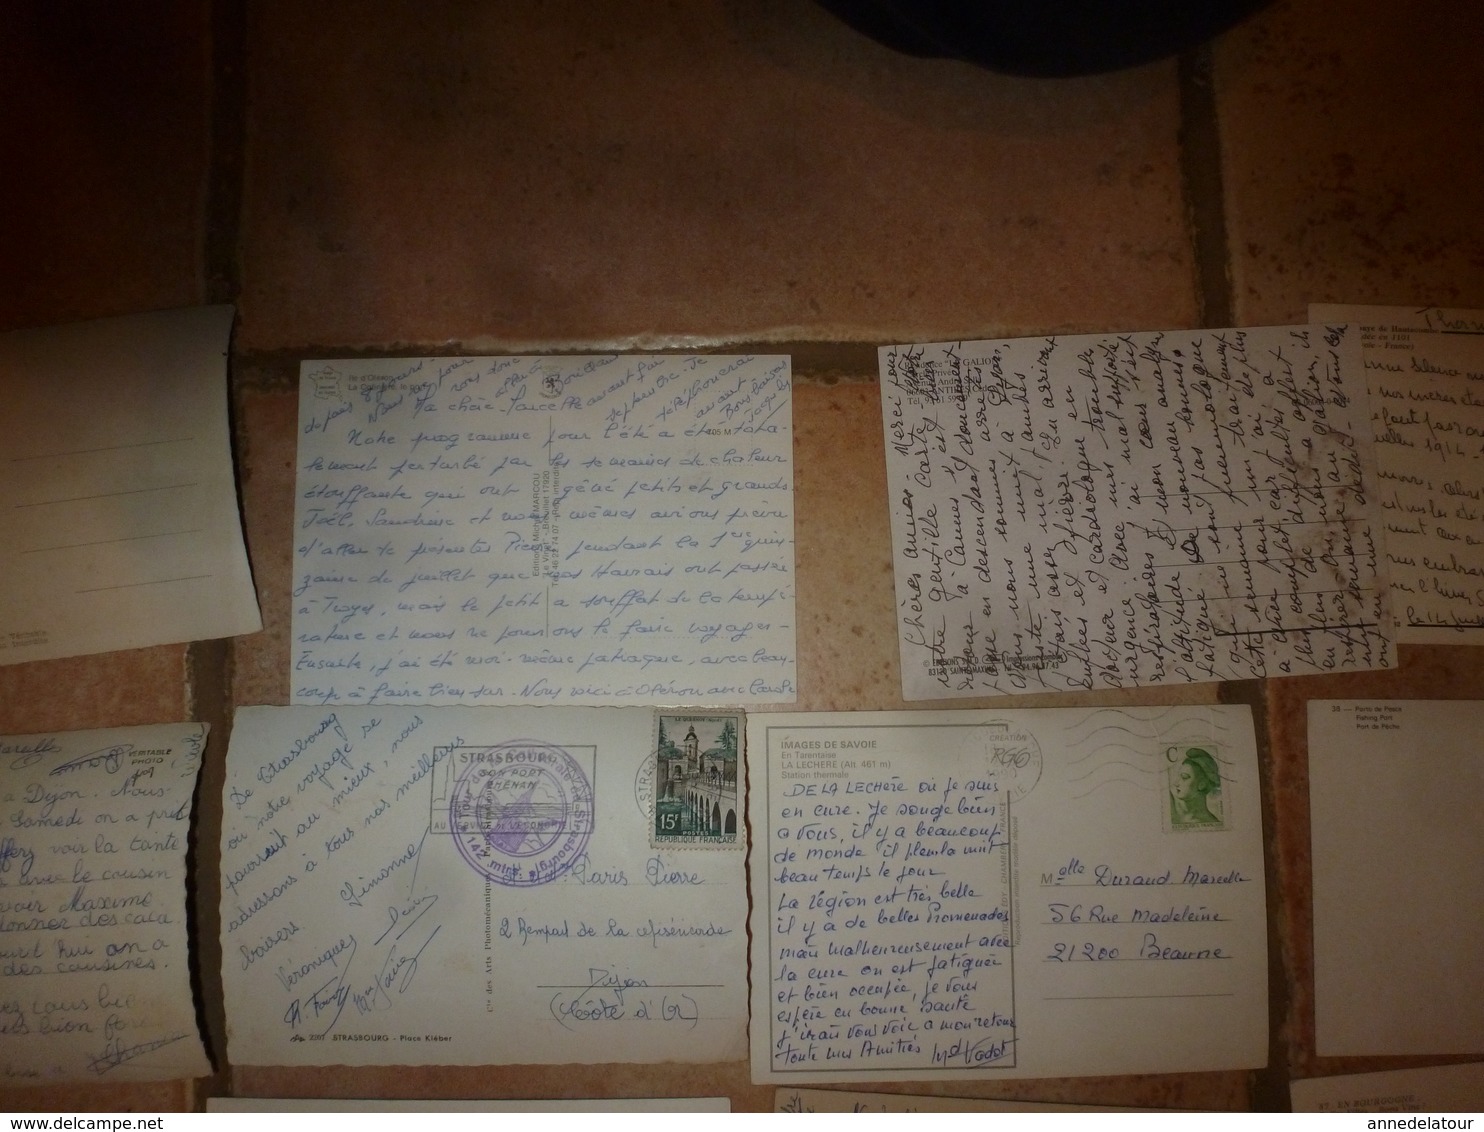 Lot vrac de 100 CARTES POSTALES de France etc(Cartes postales moderne (15cm x 10cm) comprenant :scènes diverses, etc